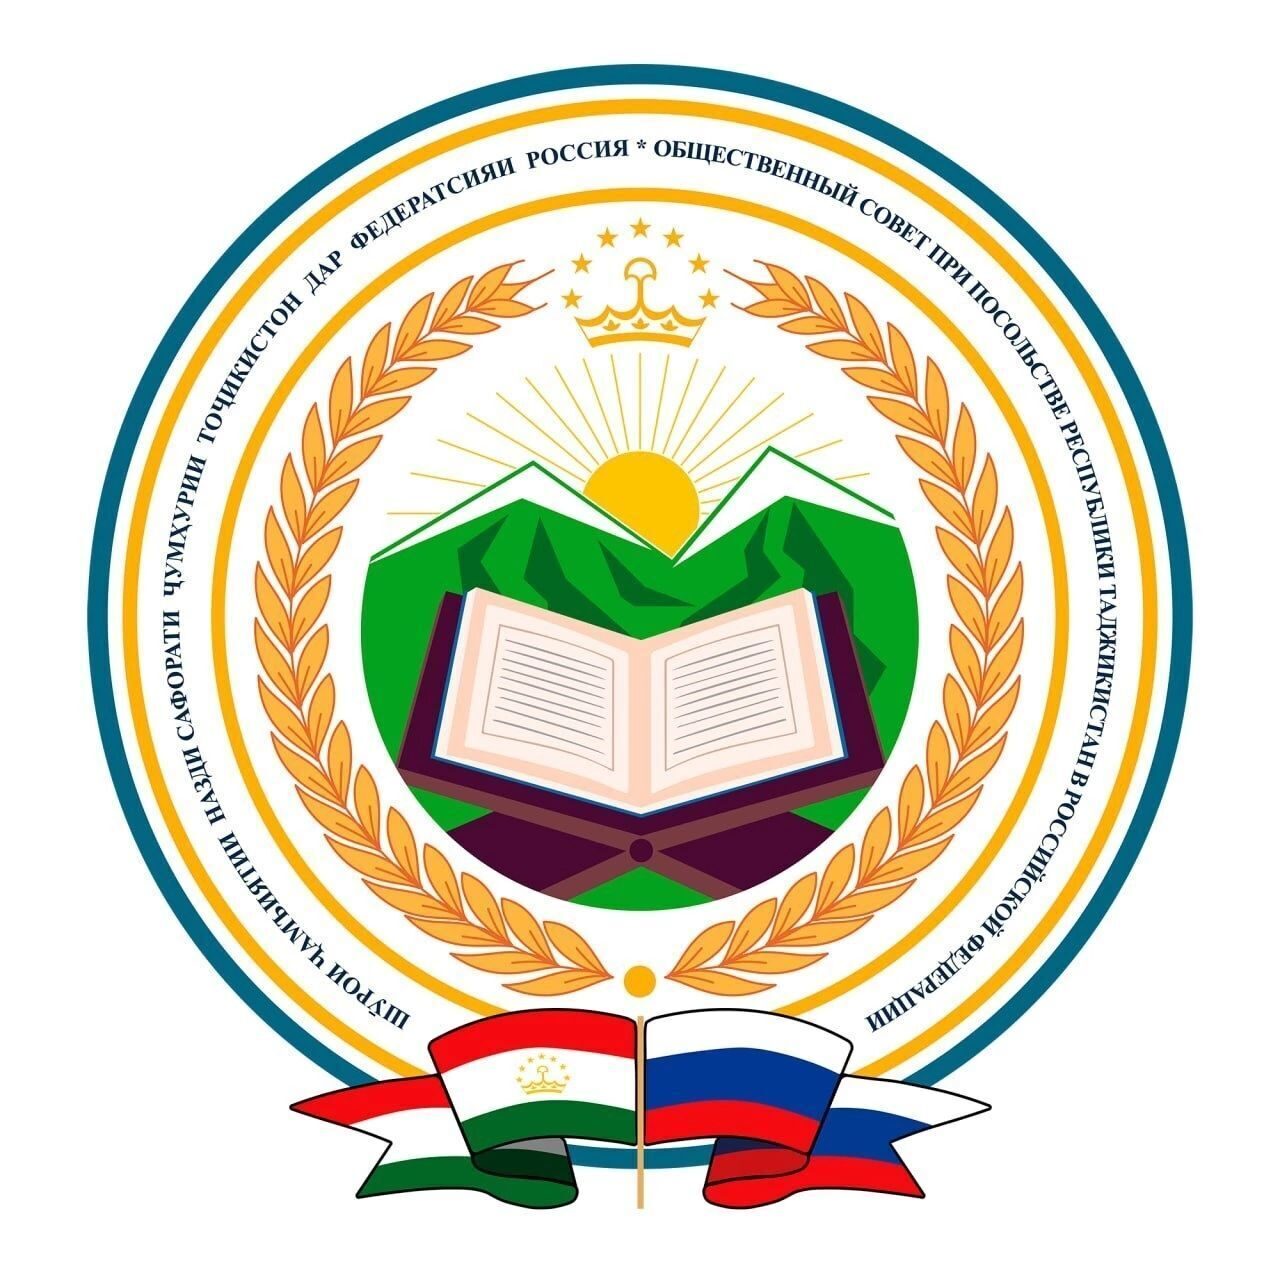 Общественный совет при Посольстве Республики Таджикистан в Российской Федерации информирует соотечественников